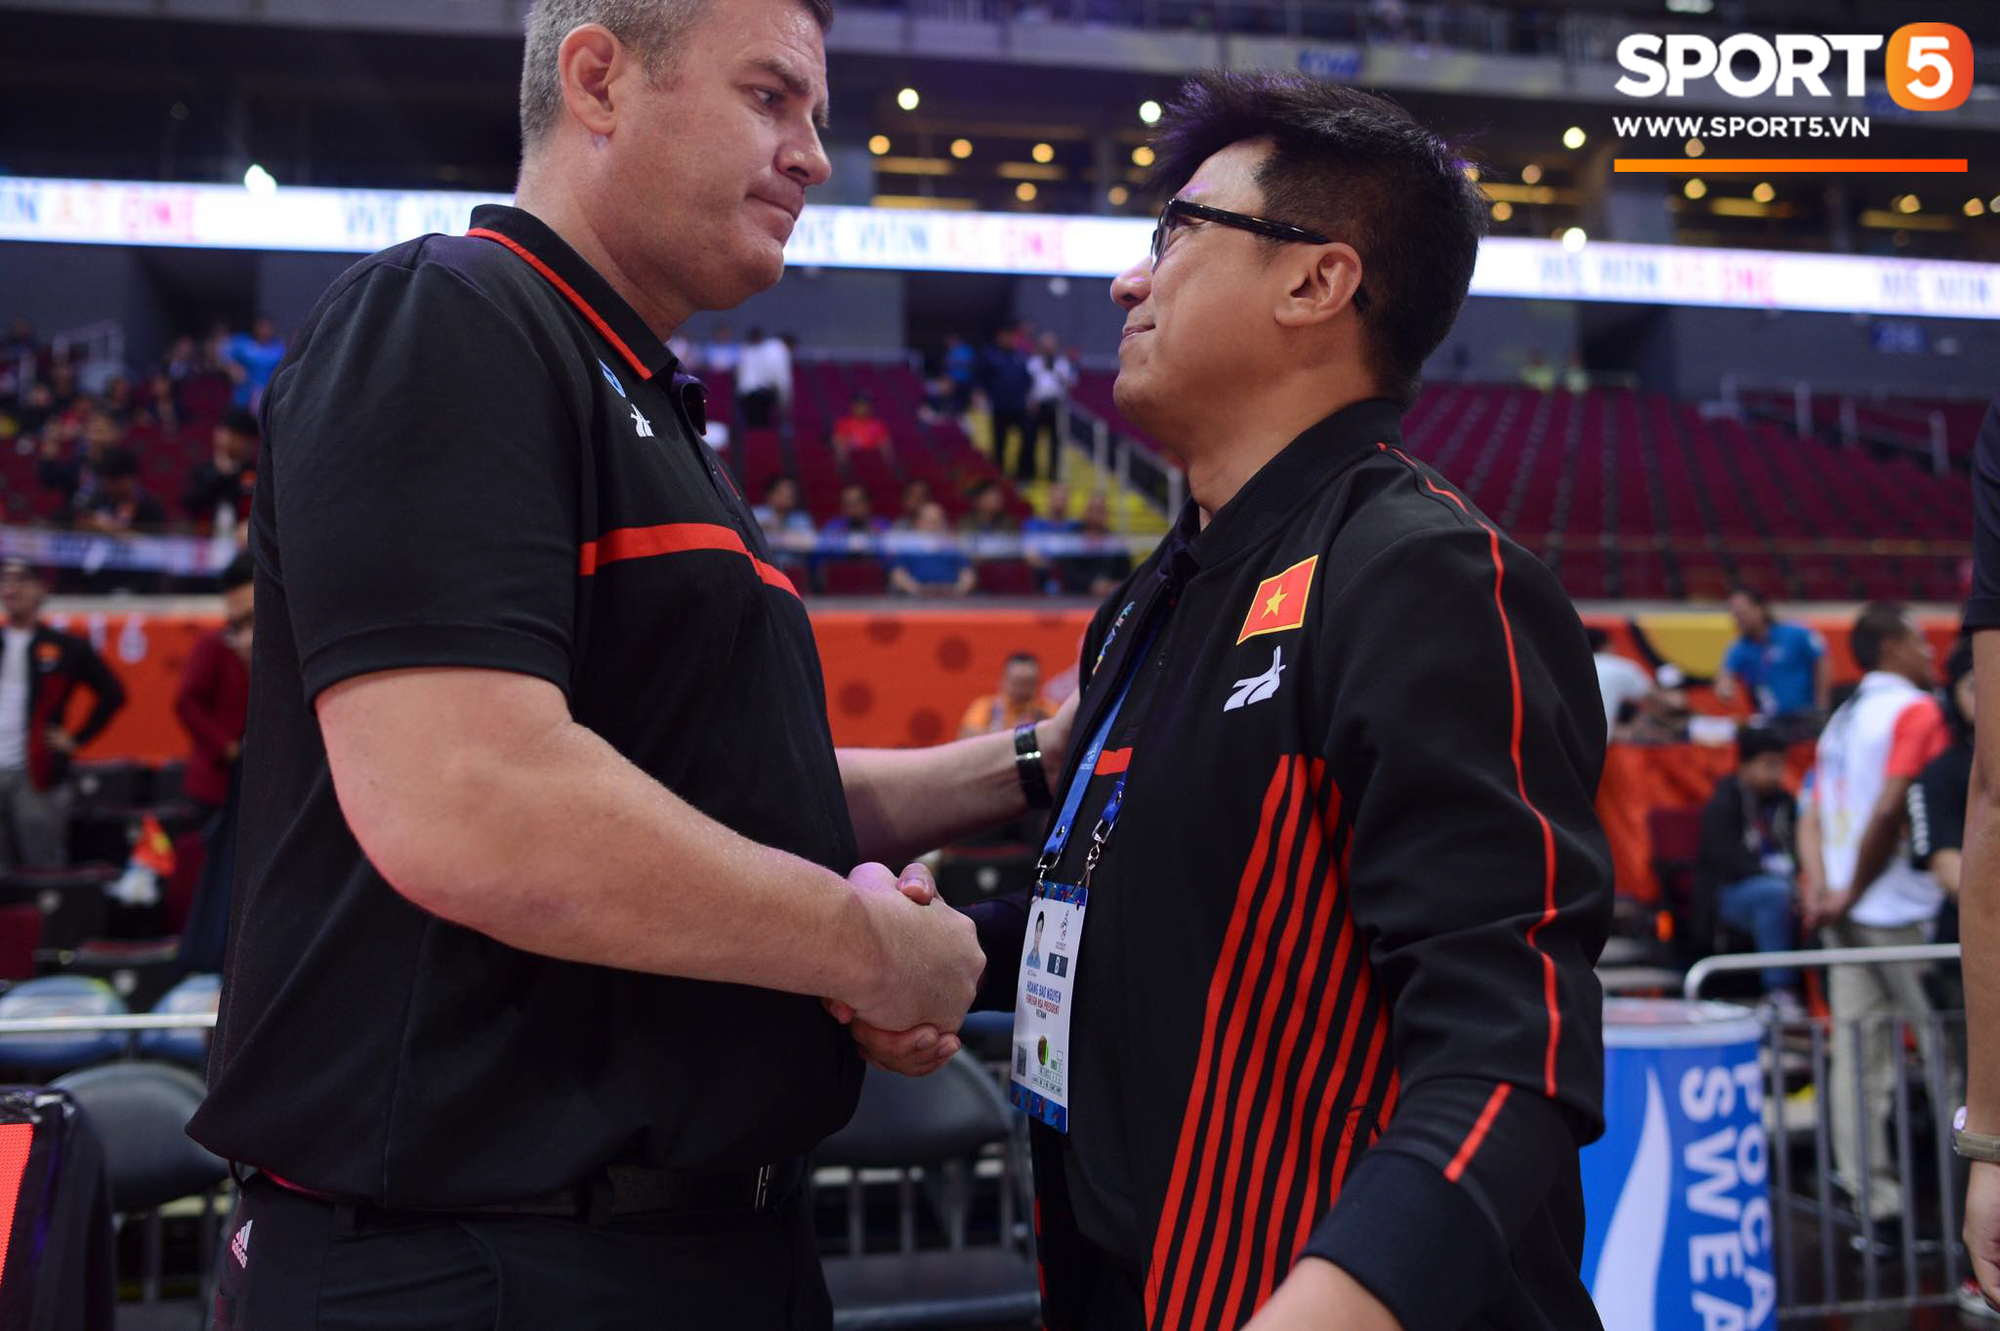 HLV trưởng tuyển bóng rổ Việt Nam thừa nhận thất bại đáng tiếc, hướng các học trò đến trận tranh huy chương đồng - Ảnh 1.